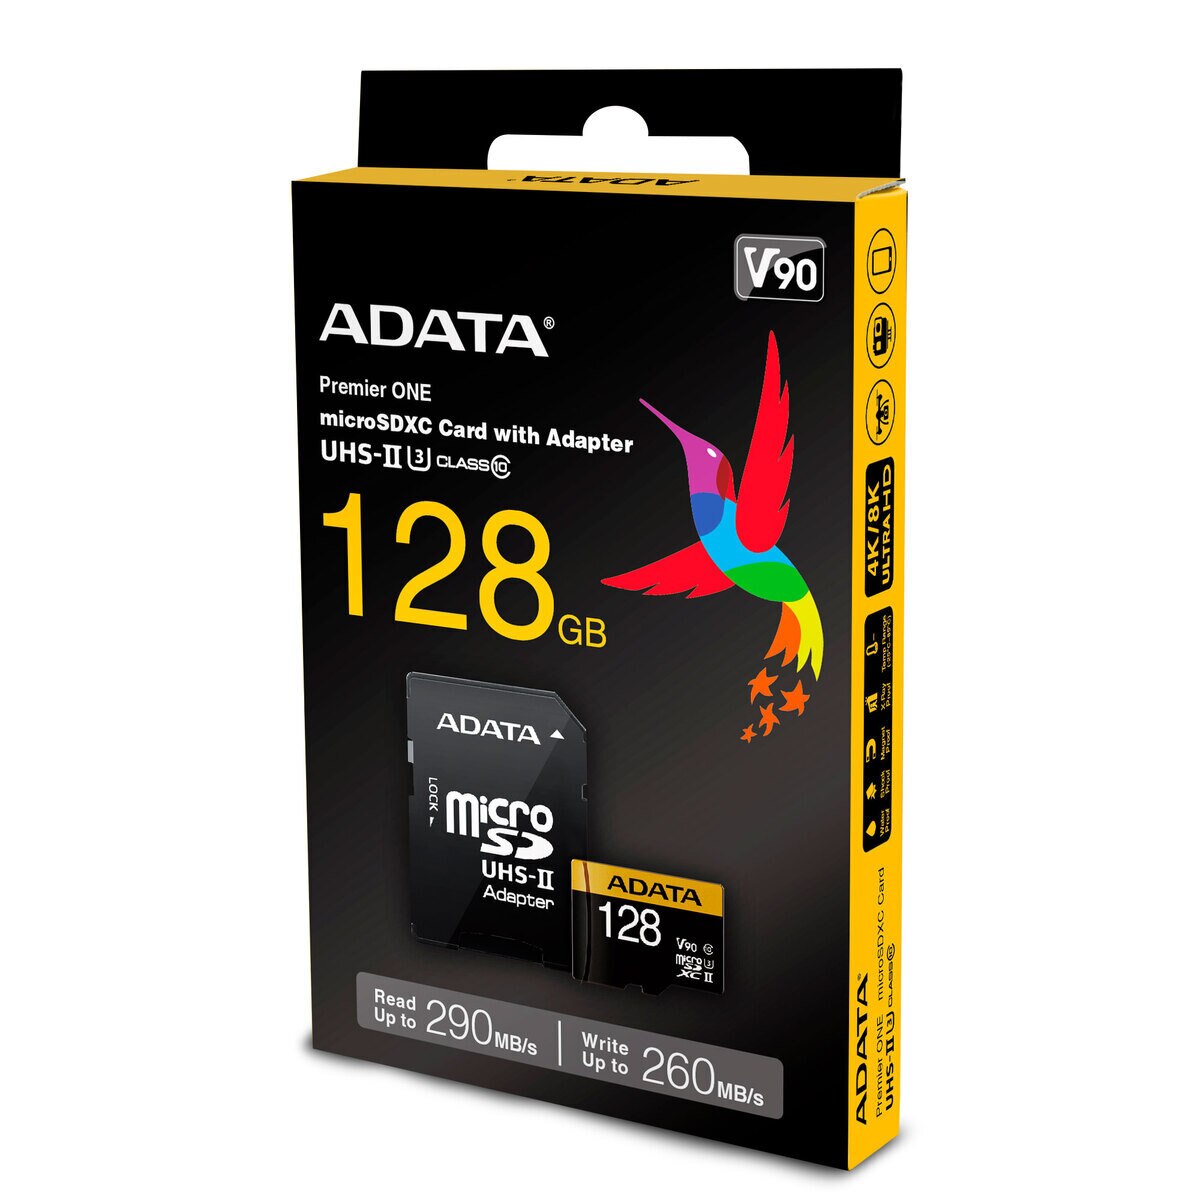 ADATA microSD 128GB UHS-Ⅱ U3 V90 AUSDX128GUII3CL10-CA1